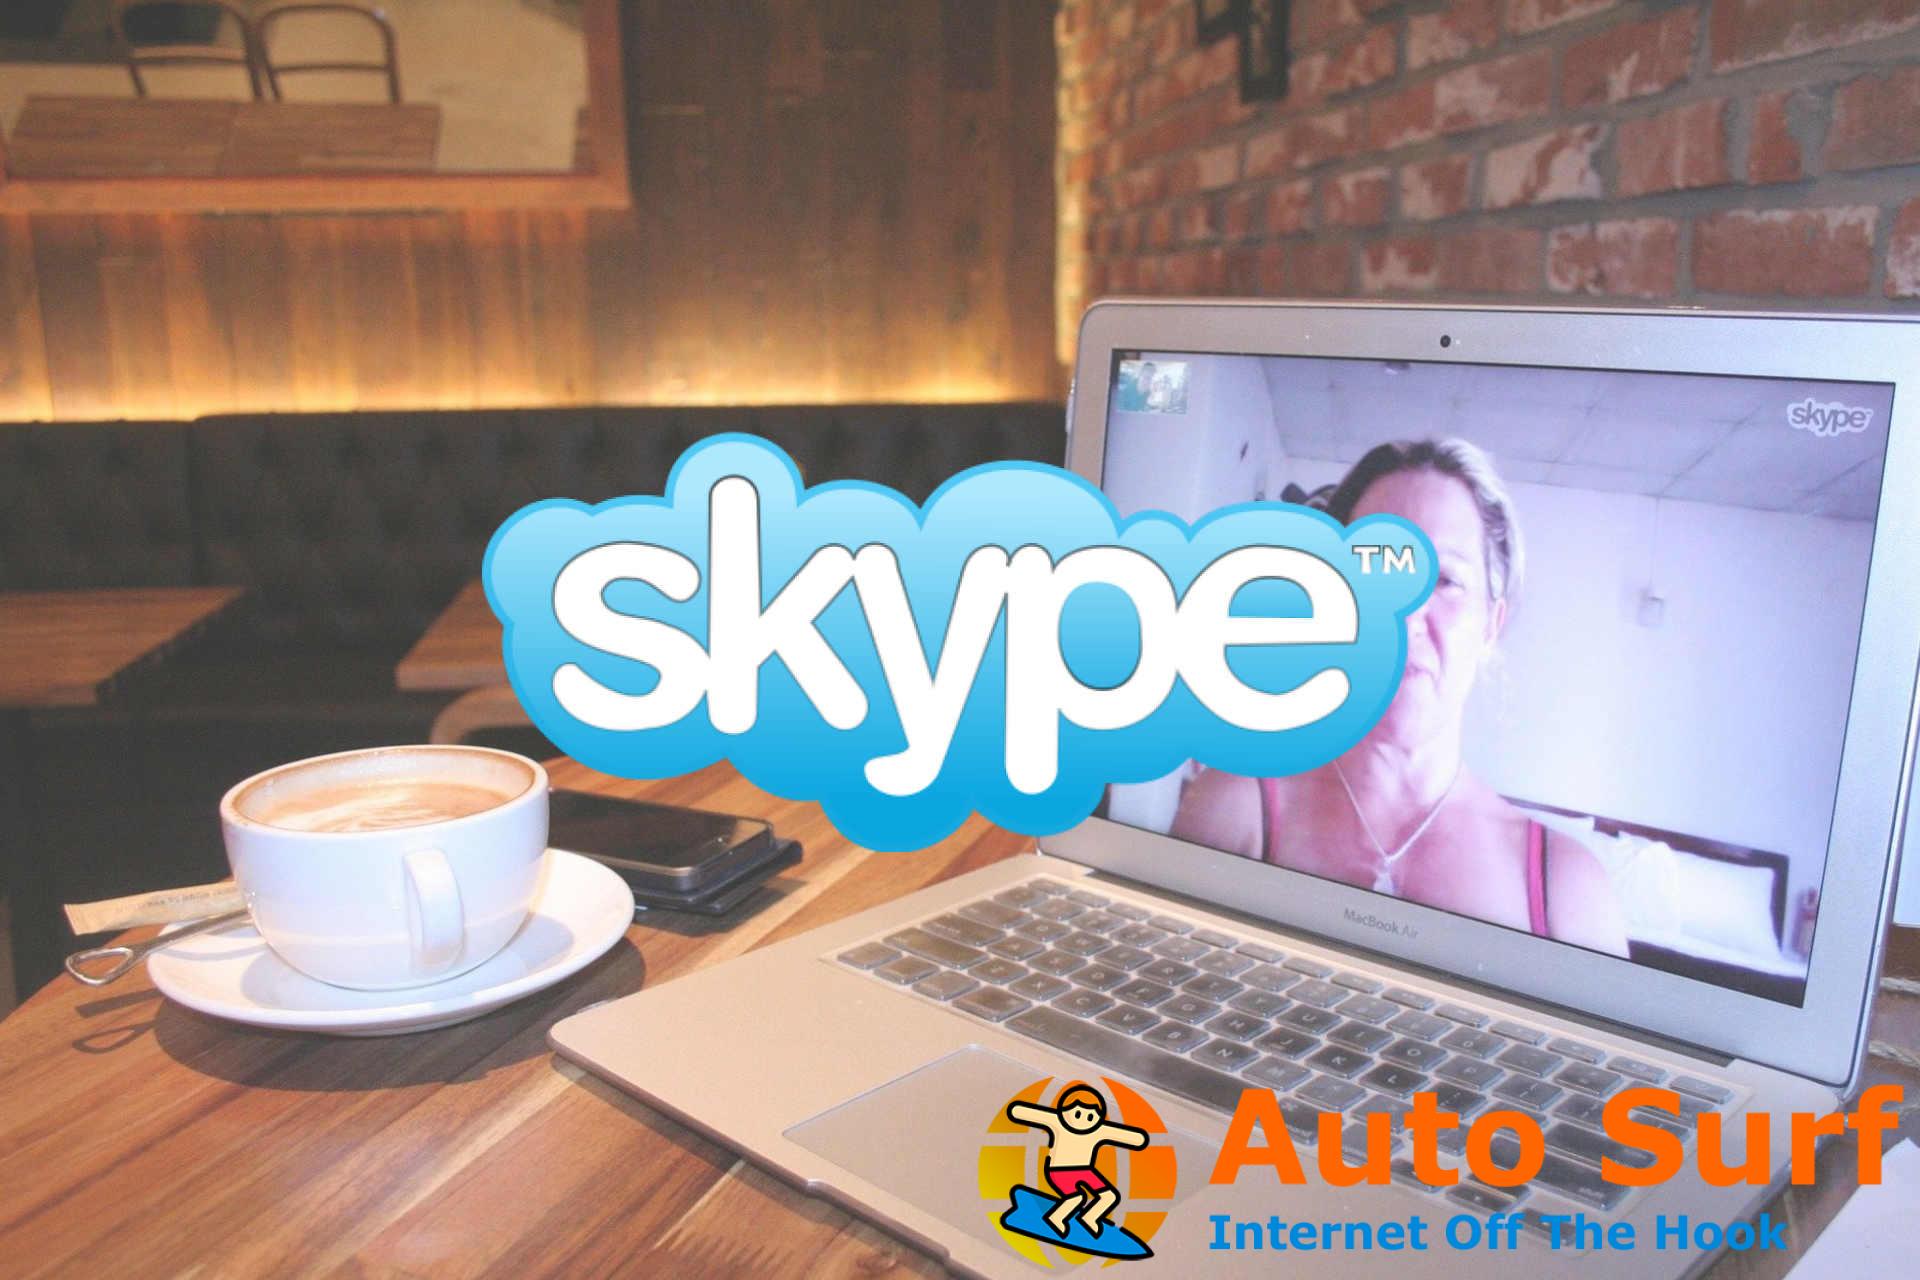 Arreglar No reconocimos tus detalles de inicio de sesión Error de Skype